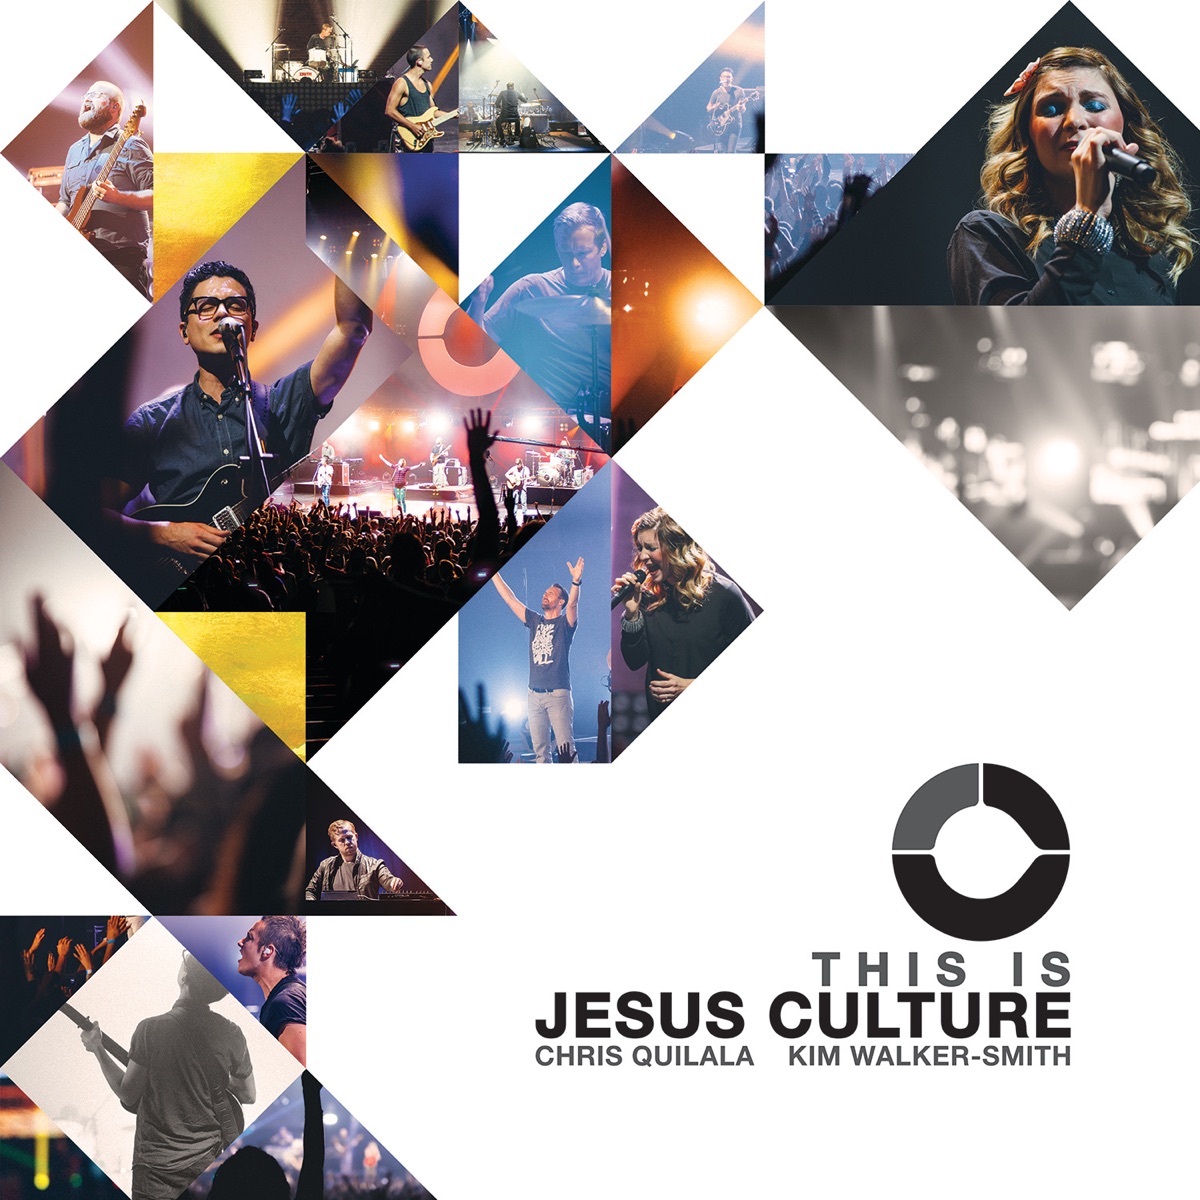 Your Love Never Fails (Live) - Album by Jesus Culture - Apple Music